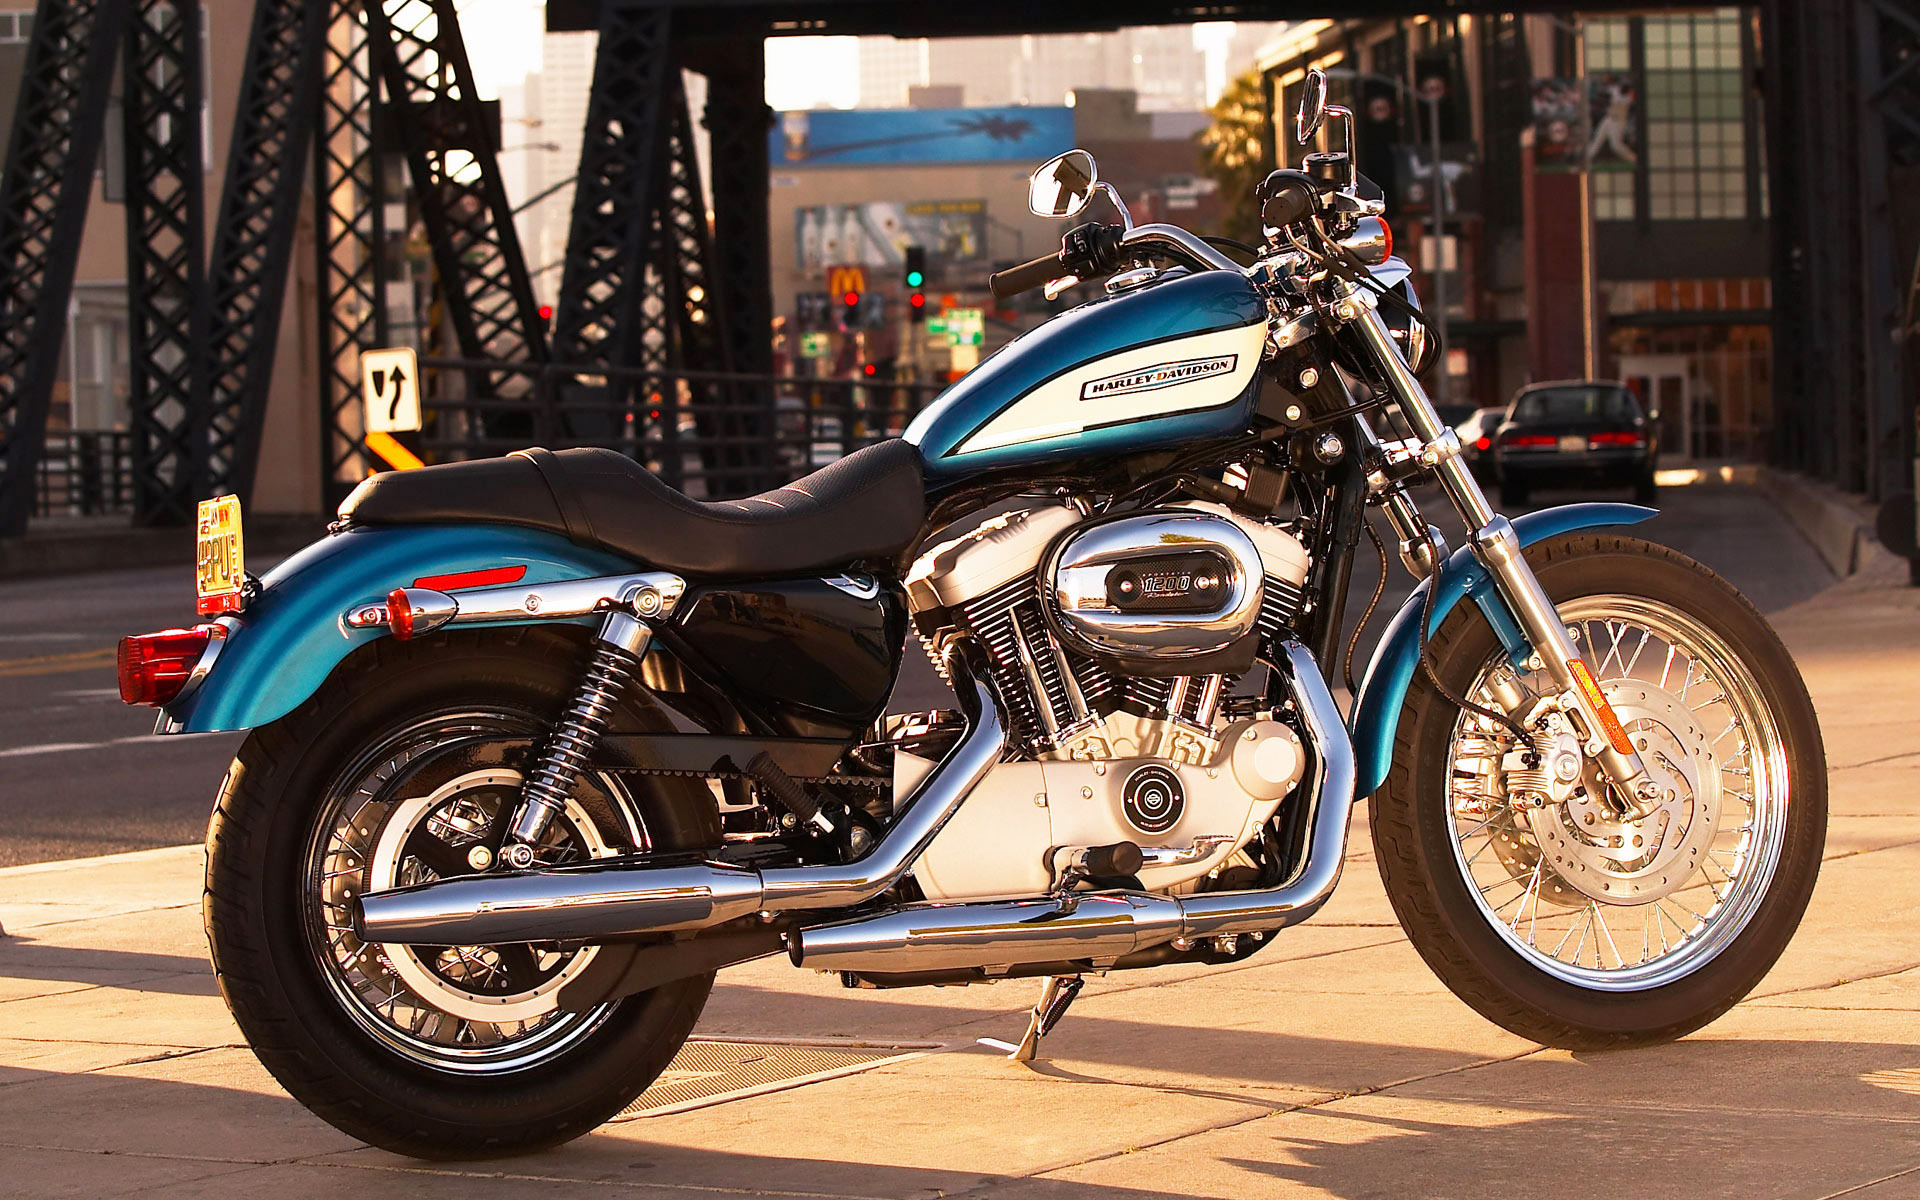 Картинки Harley davidson, город, дорога, мотоцикл фото и обои на рабочий стол